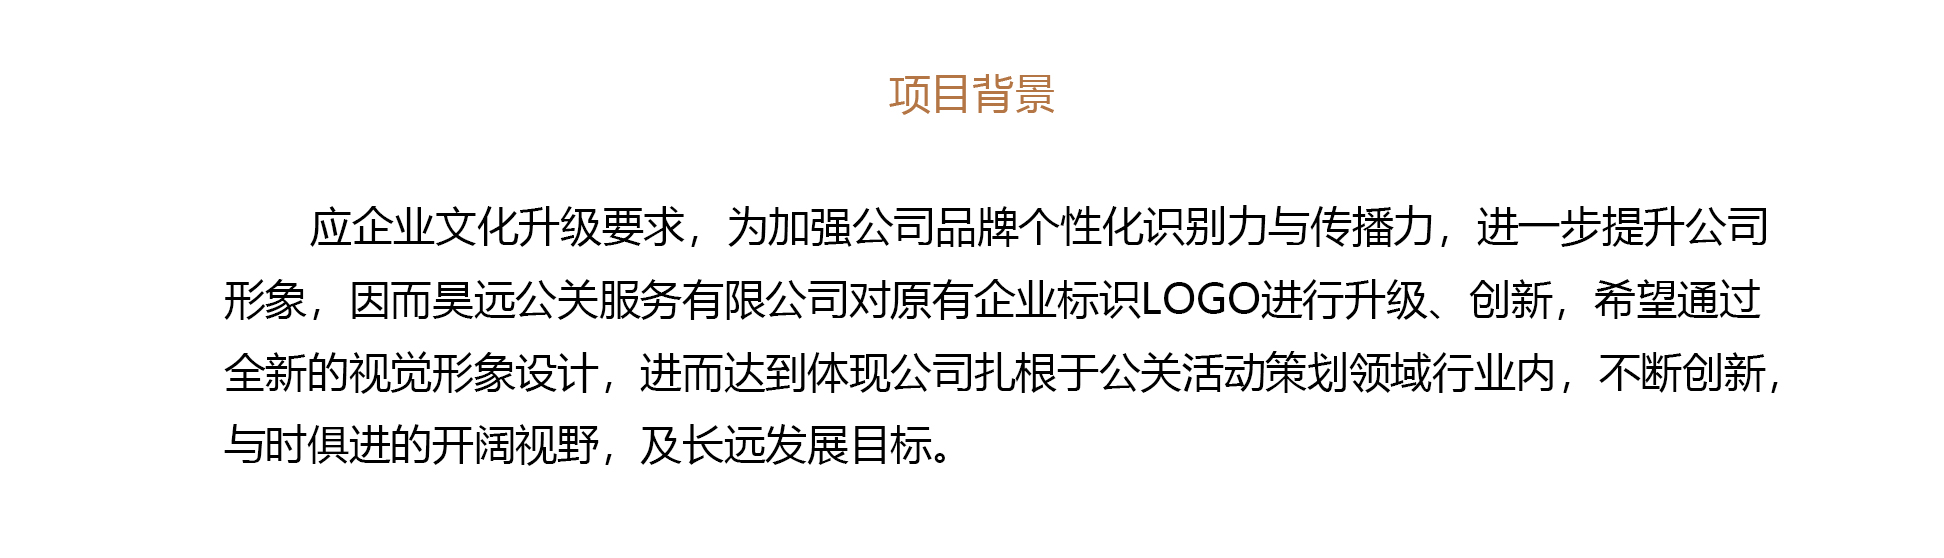 昊远公关LOGO设计